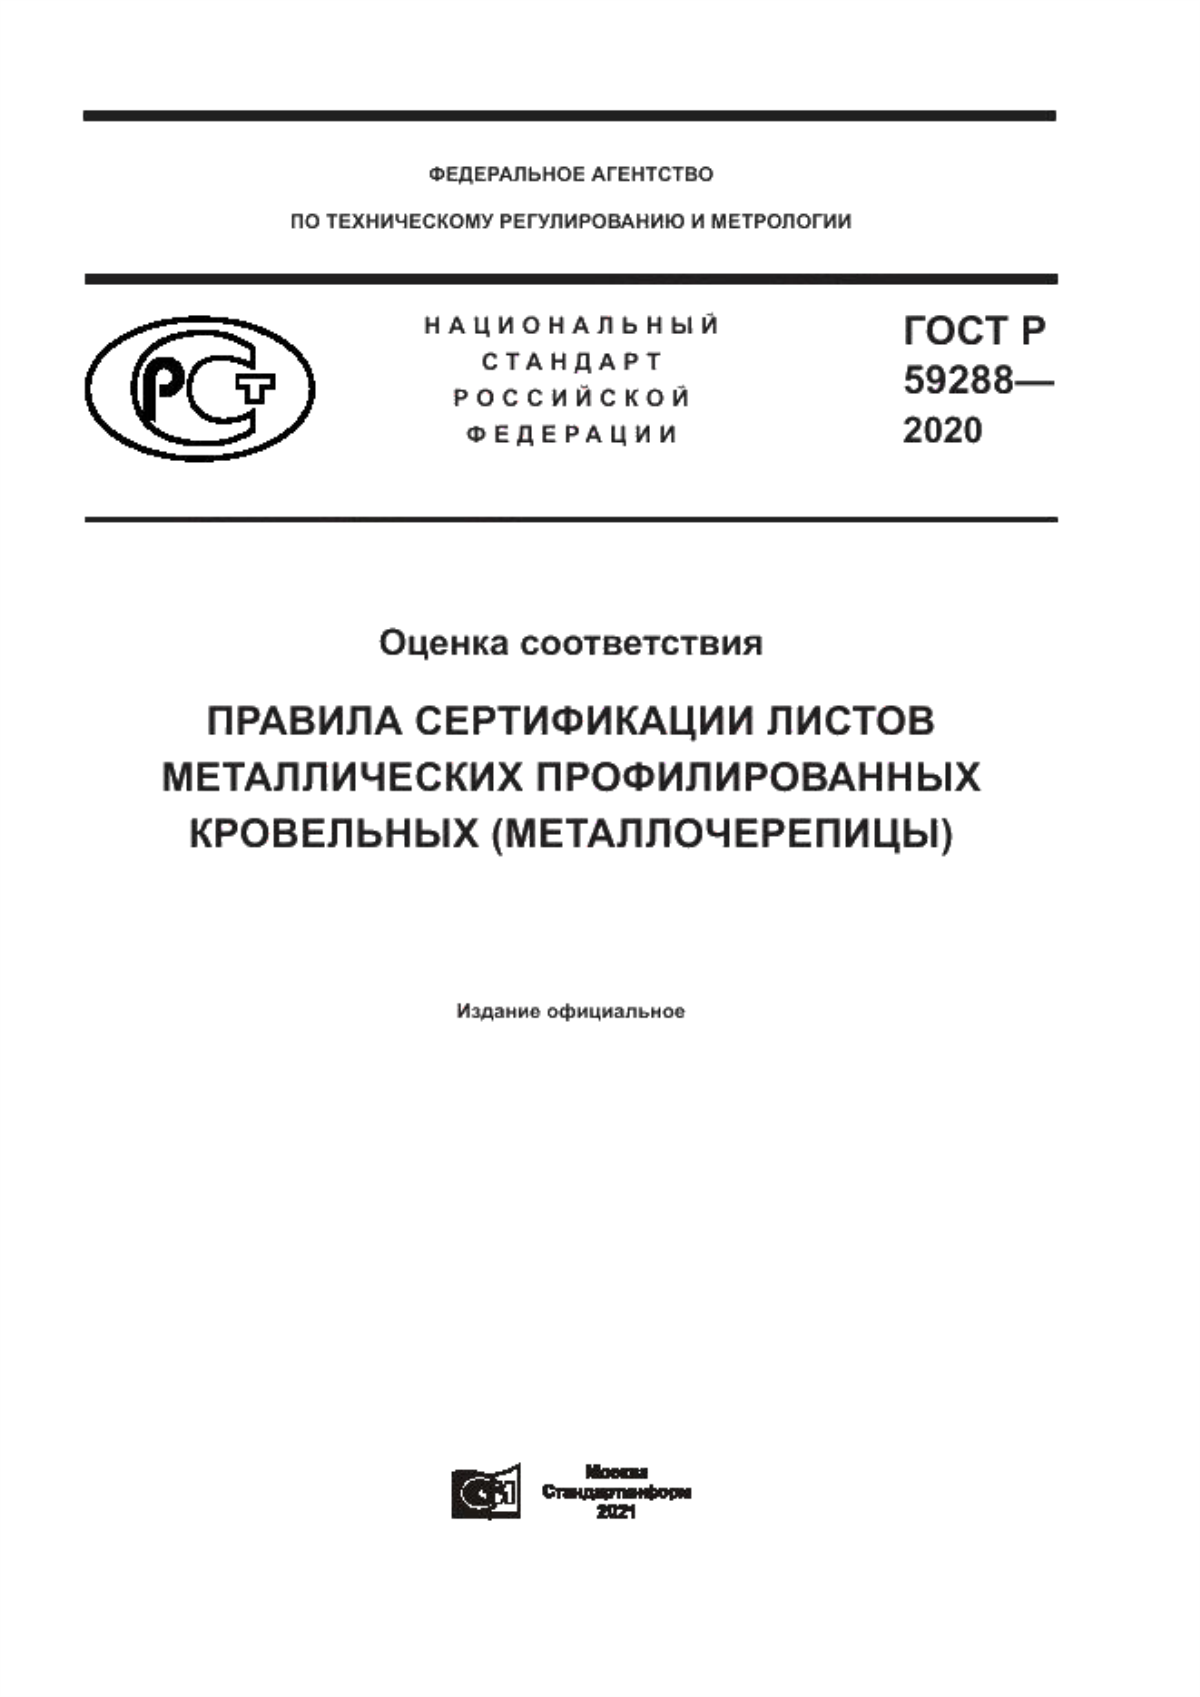 ГОСТ Р 59288-2020 Оценка соответствия. Правила сертификации листов металлических профилированных кровельных (металлочерепицы)